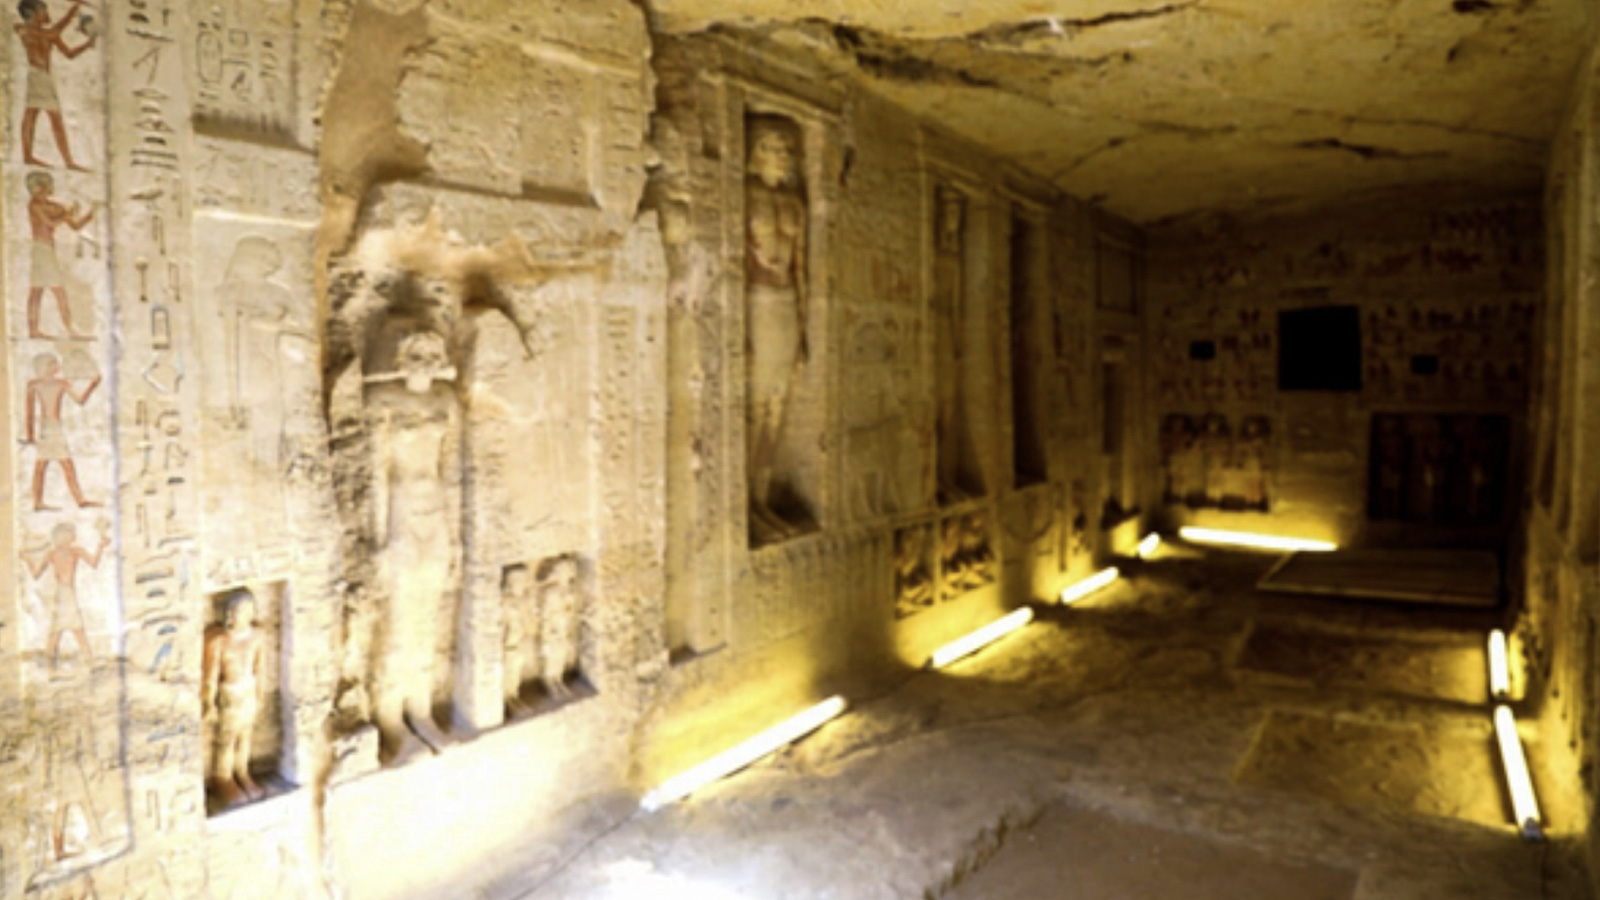 تتكون المقبرة من صالة مستطيلة تبلغ مساحتها حوالي 10 أمتار طولا وحوالي 3 أمتار عرضا ويبلغ ارتفعها 3 أمتار (موقع وزارة الآثار المصرية)